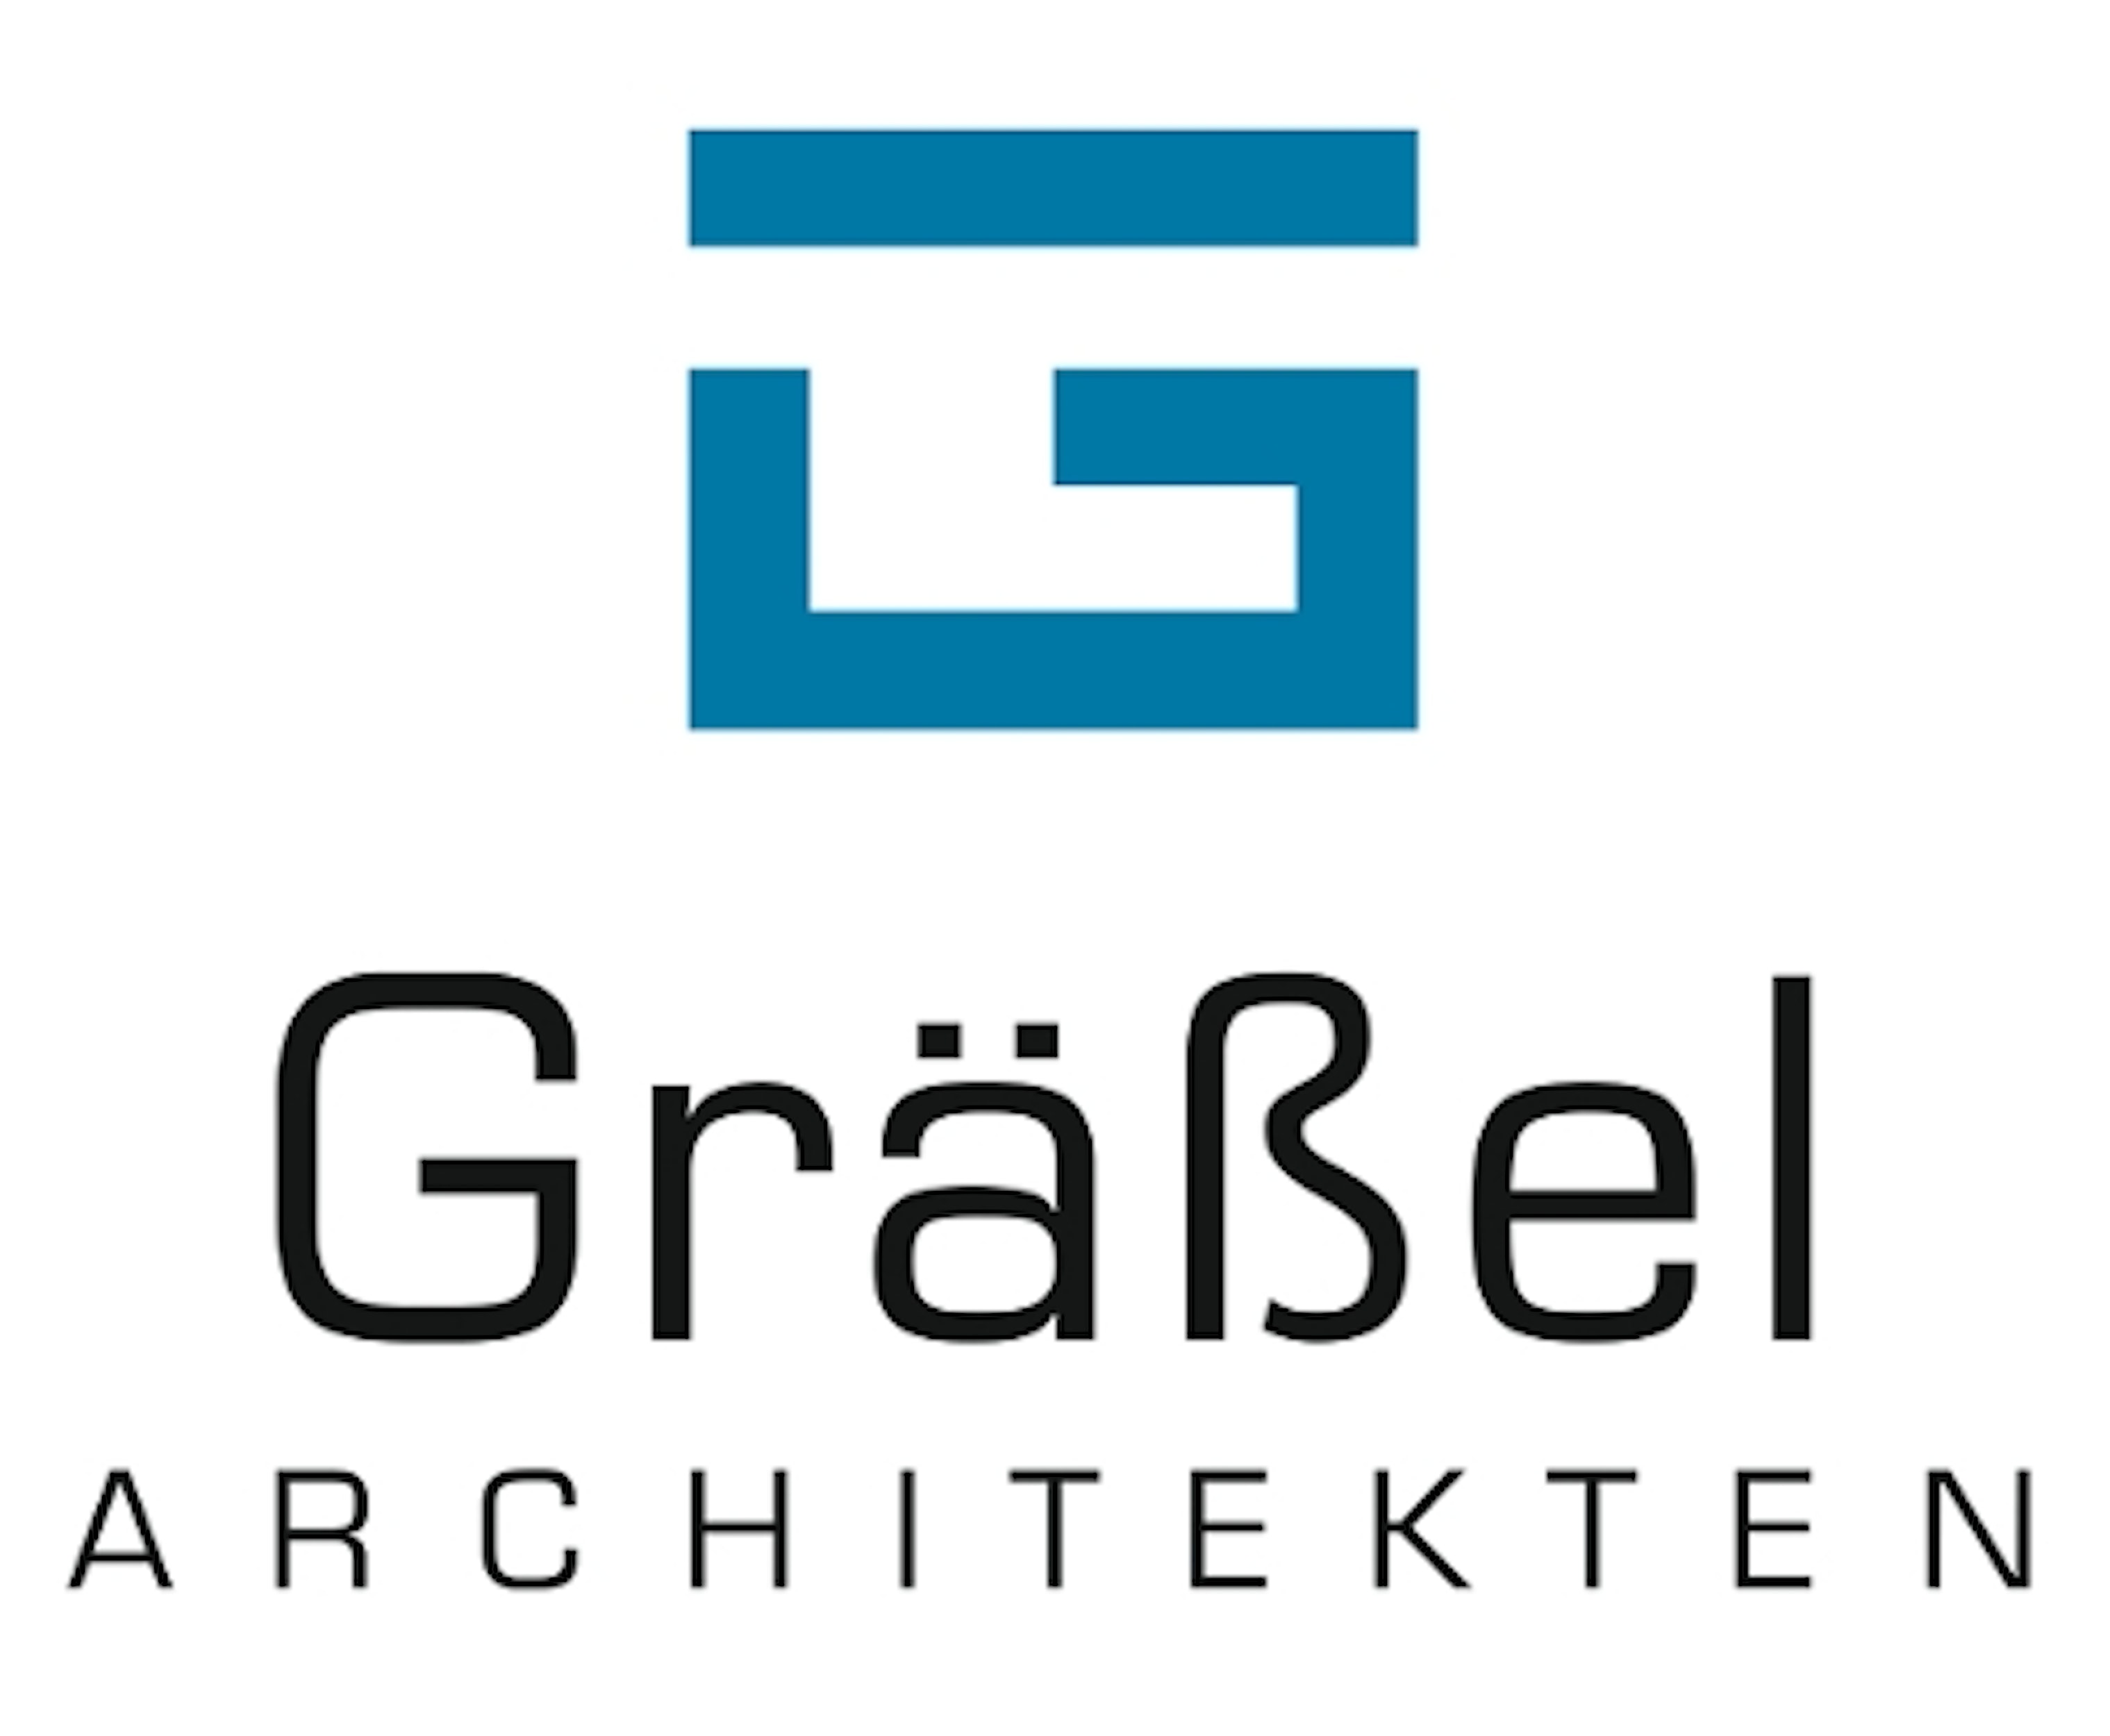 Graessel Architekten Logo